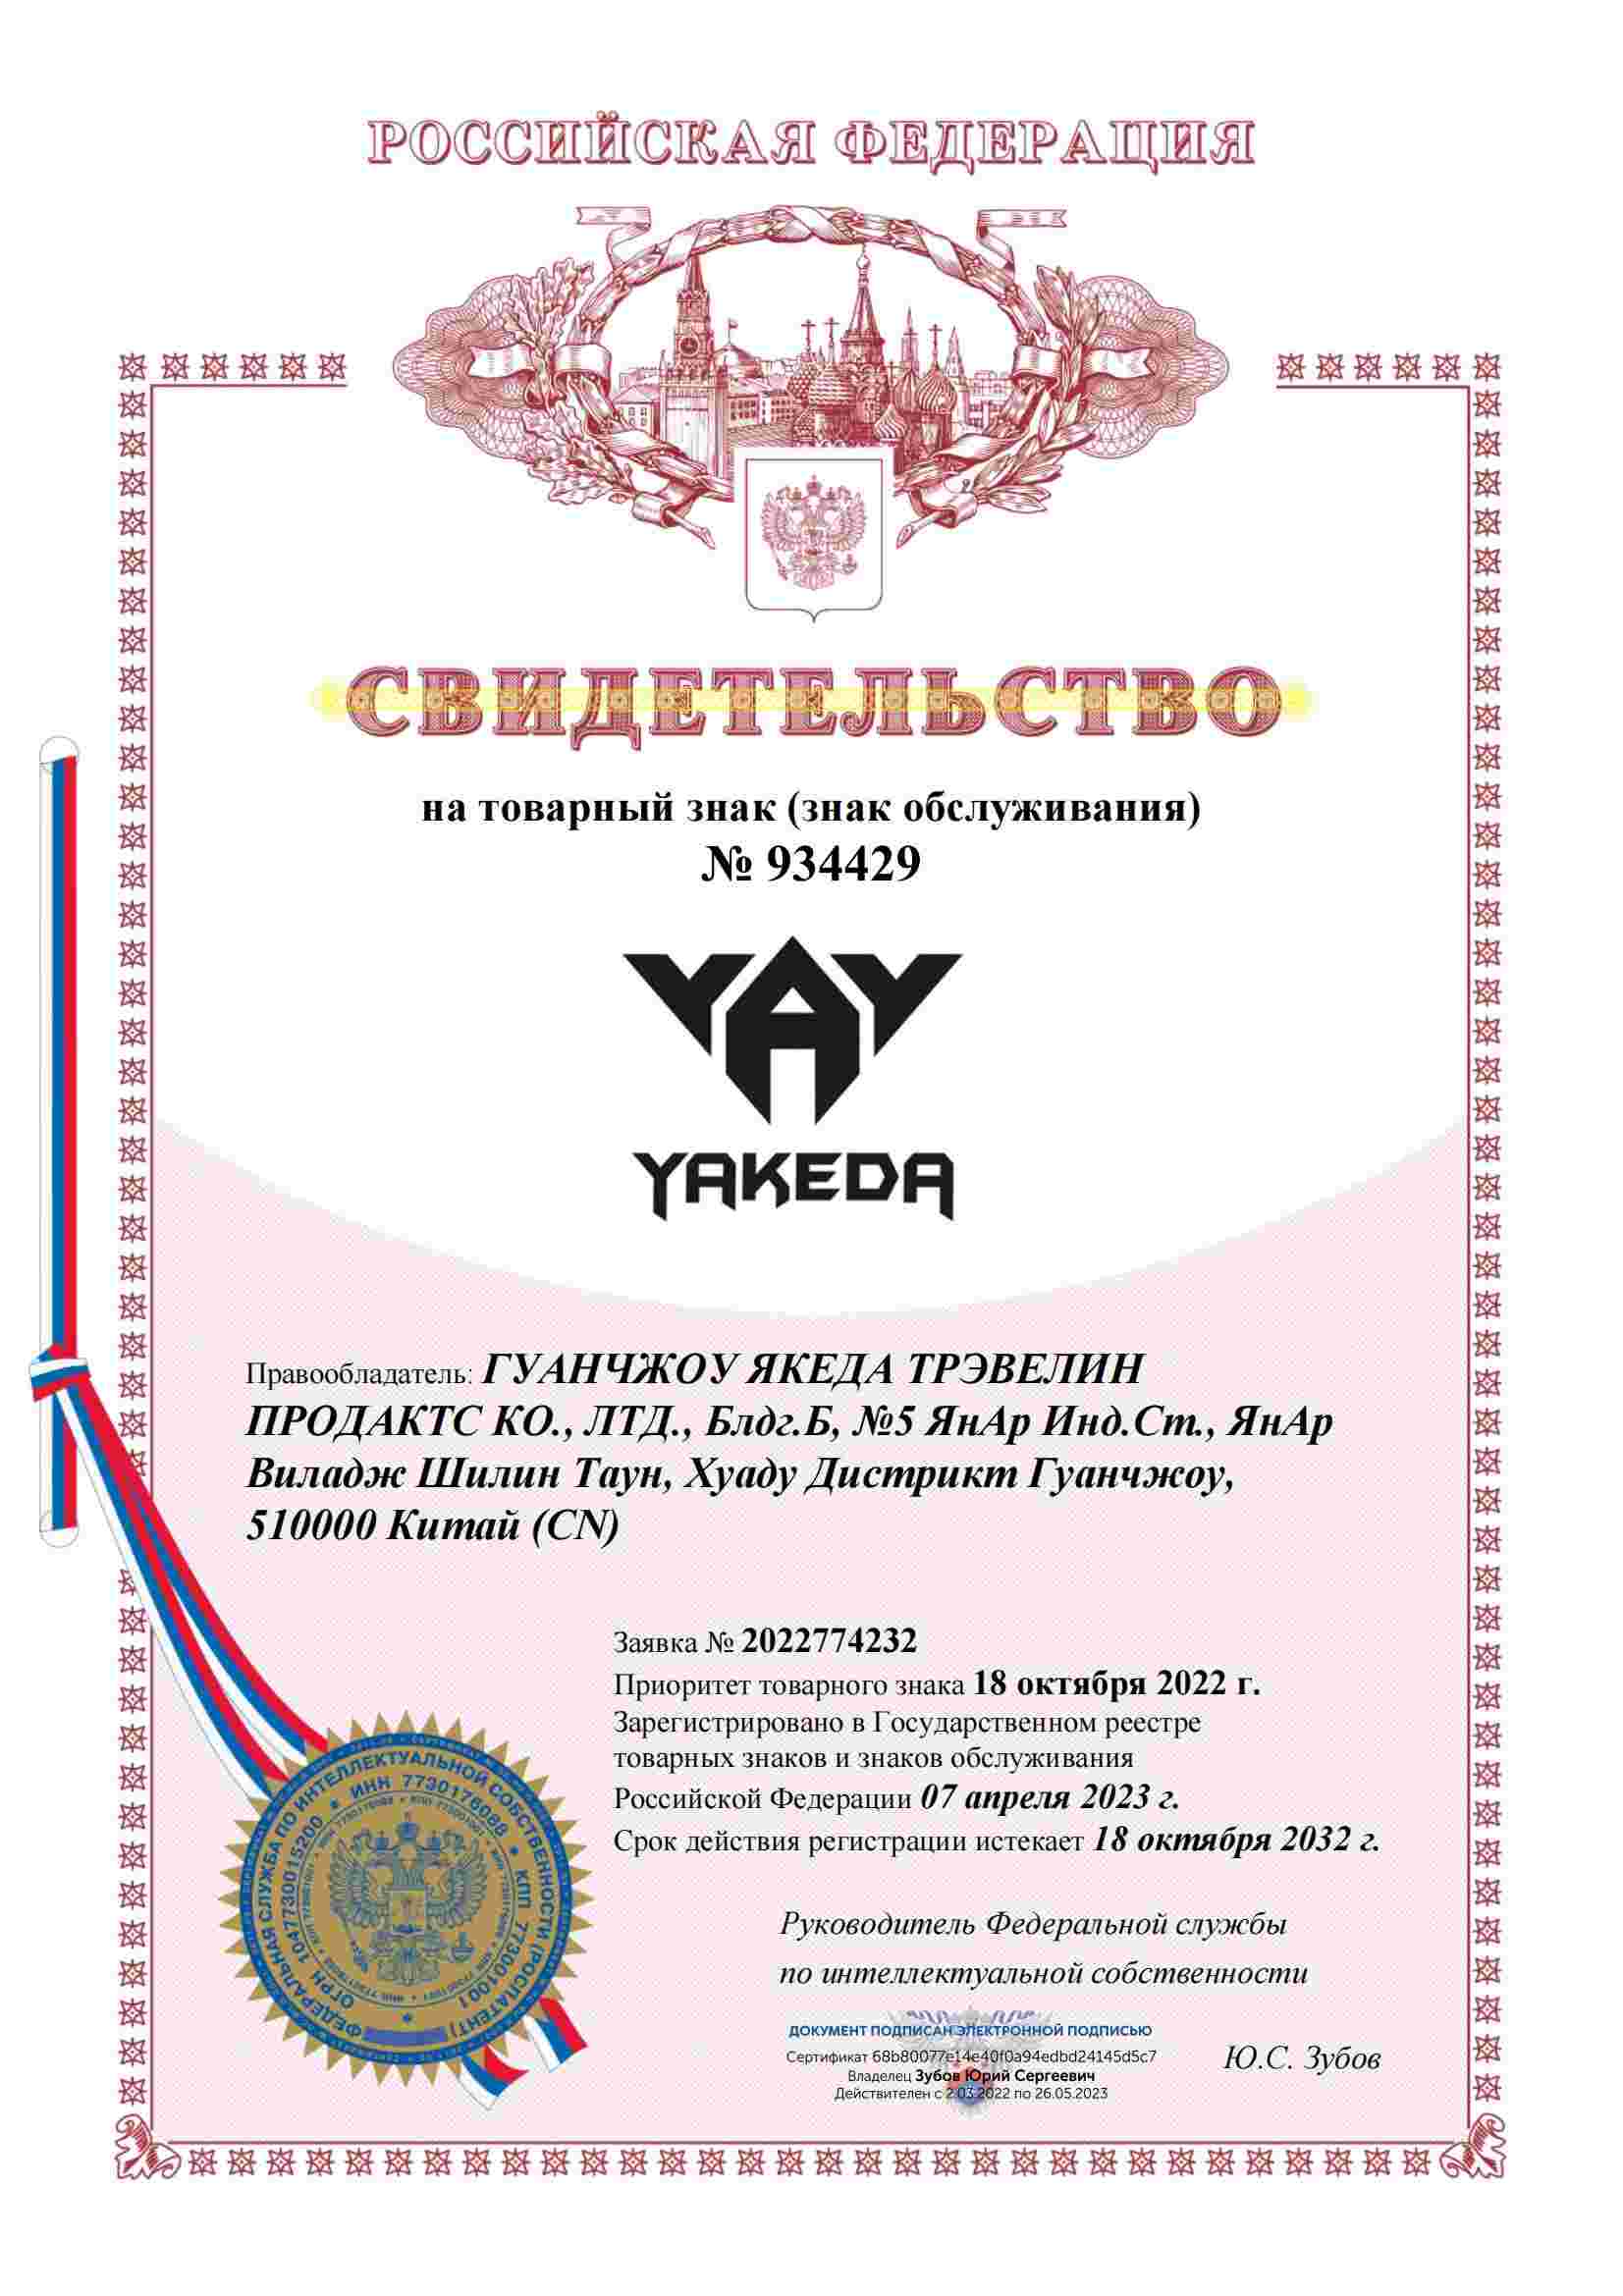 Certificado de marca de Rusia